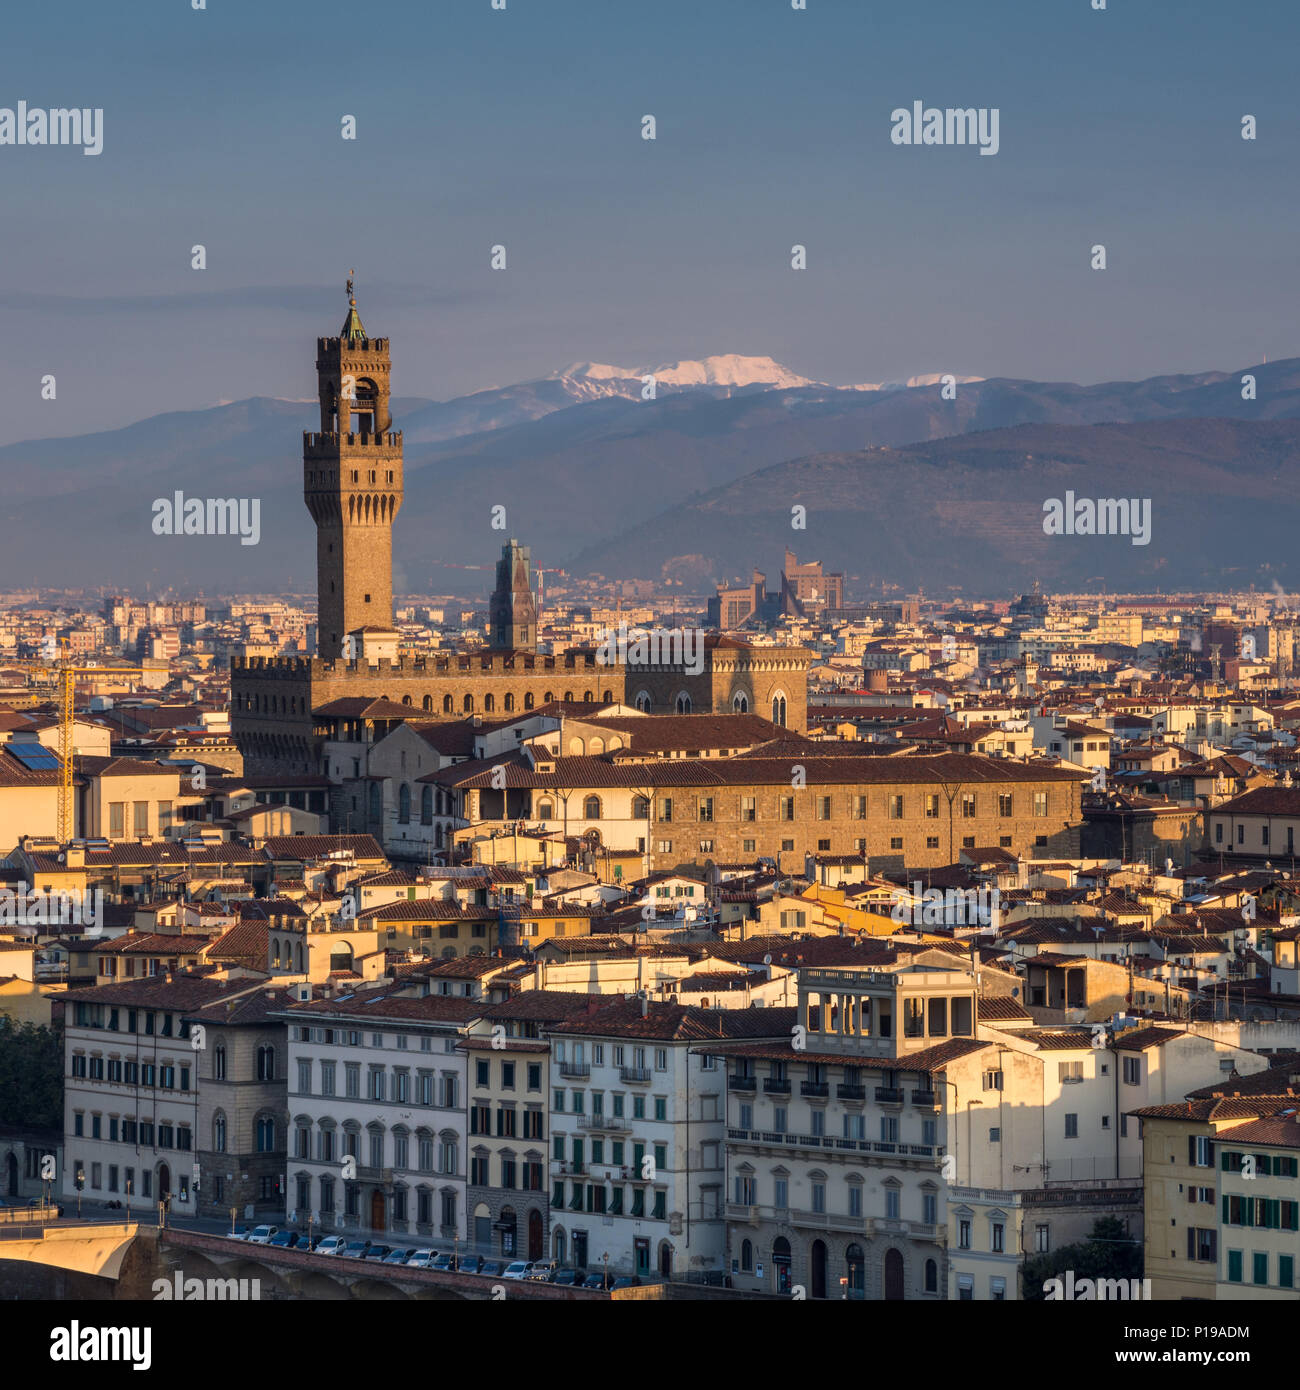 Florenz, Italien - 24. März 2018: Morgenlicht leuchtet das Stadtbild von Florenz, darunter das historische Wahrzeichen der Palazzo Vecchio. Stockfoto